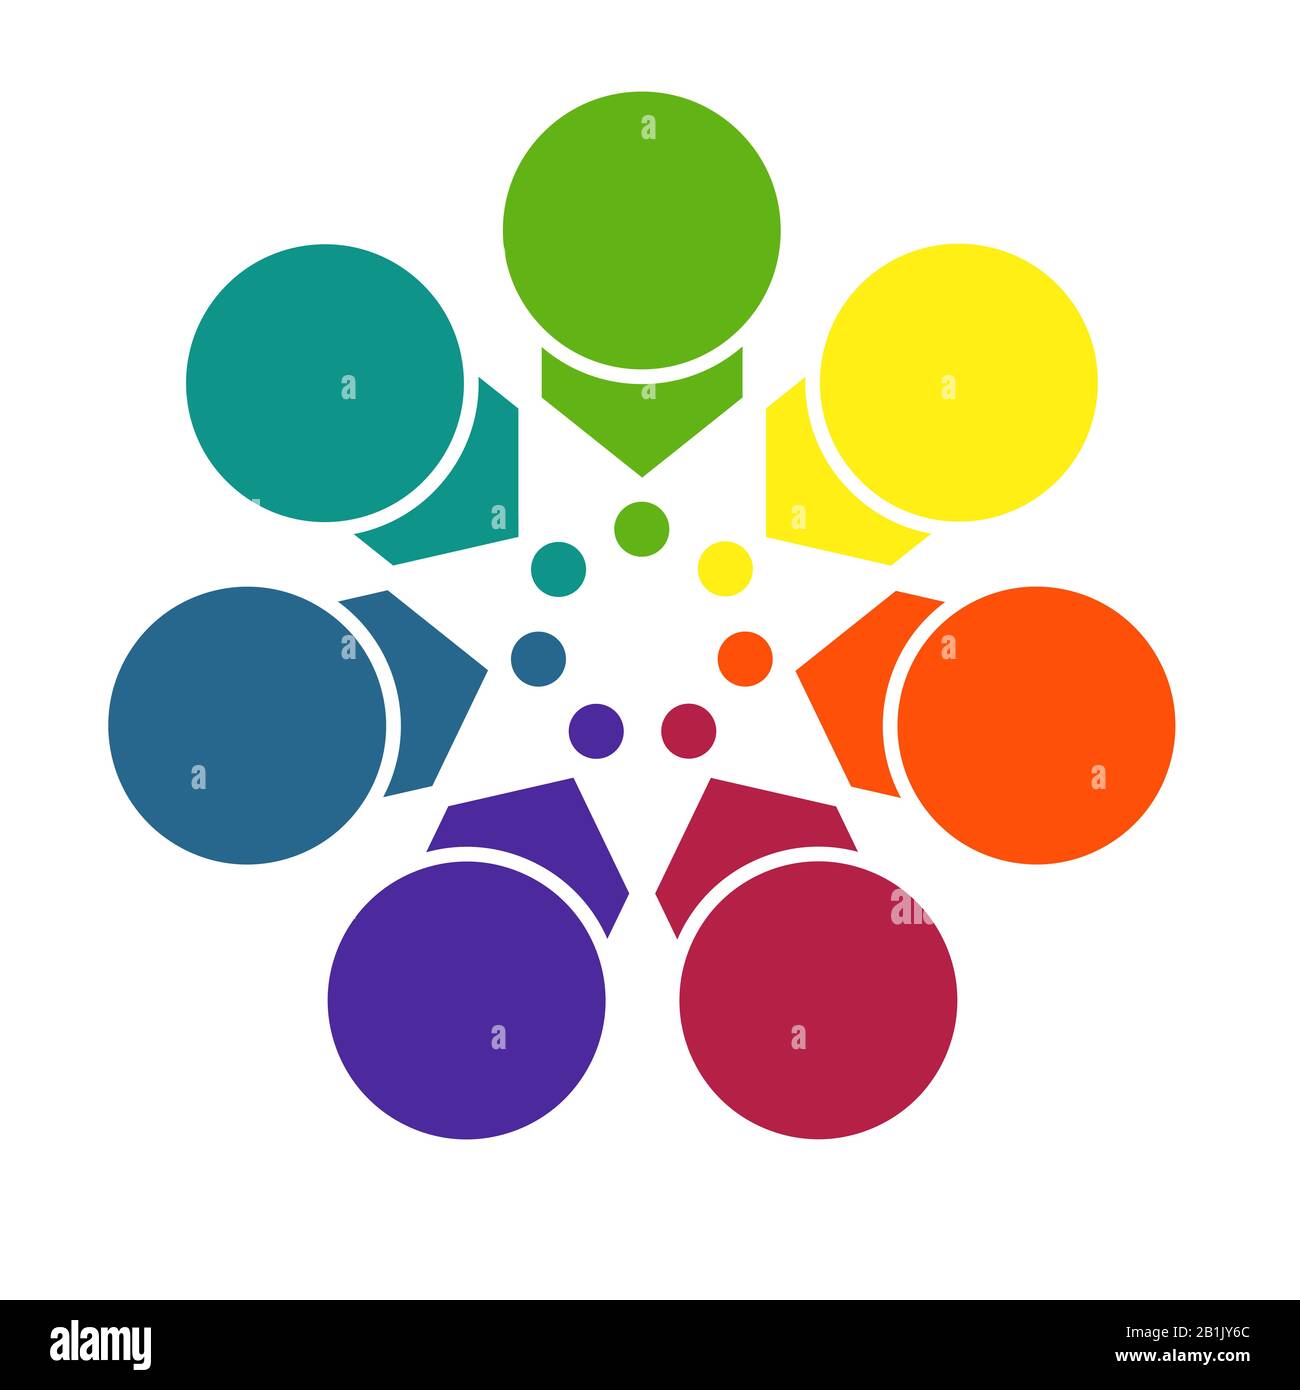 Plantilla brillante de colores para infografías de flechas y círculos con sombras, dispuestas en círculo, para 7 posiciones Foto de stock